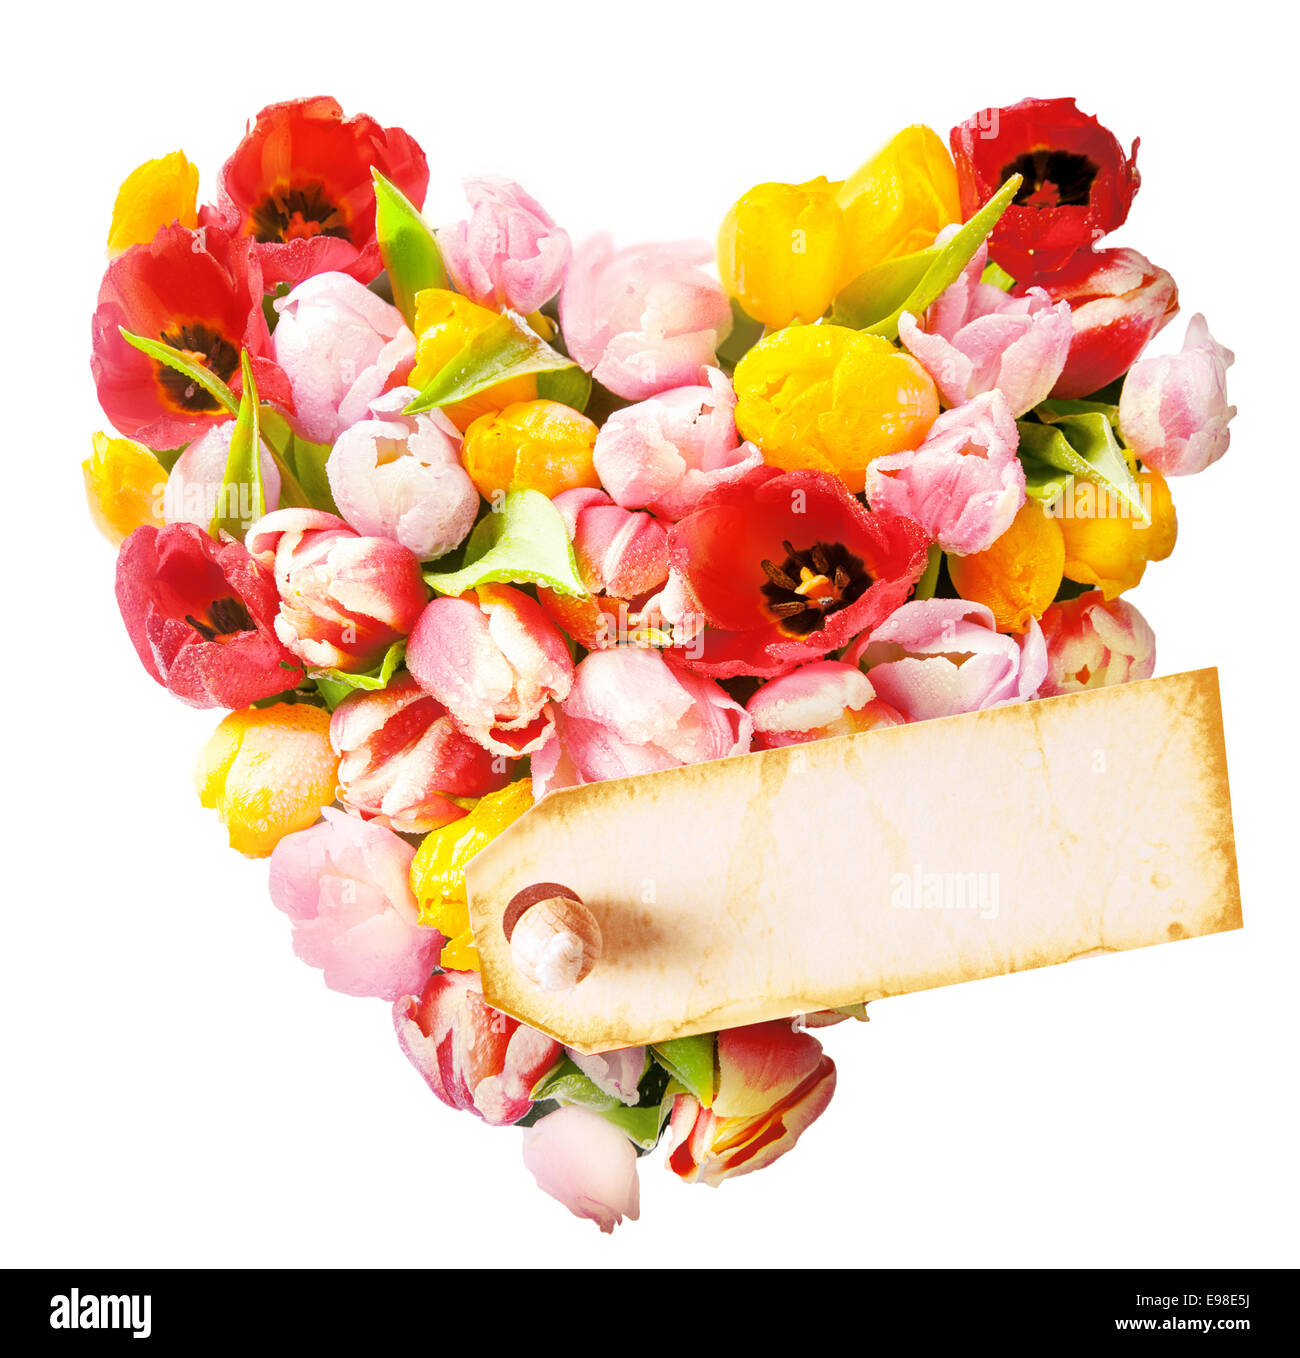 Cuore floreale composto da una disposizione di colorati ornamentali tulipani freschi isolato su bianco con attaccato un blank gift tag per il messaggio o il messaggio di saluto per una fidanzata o amato Foto Stock